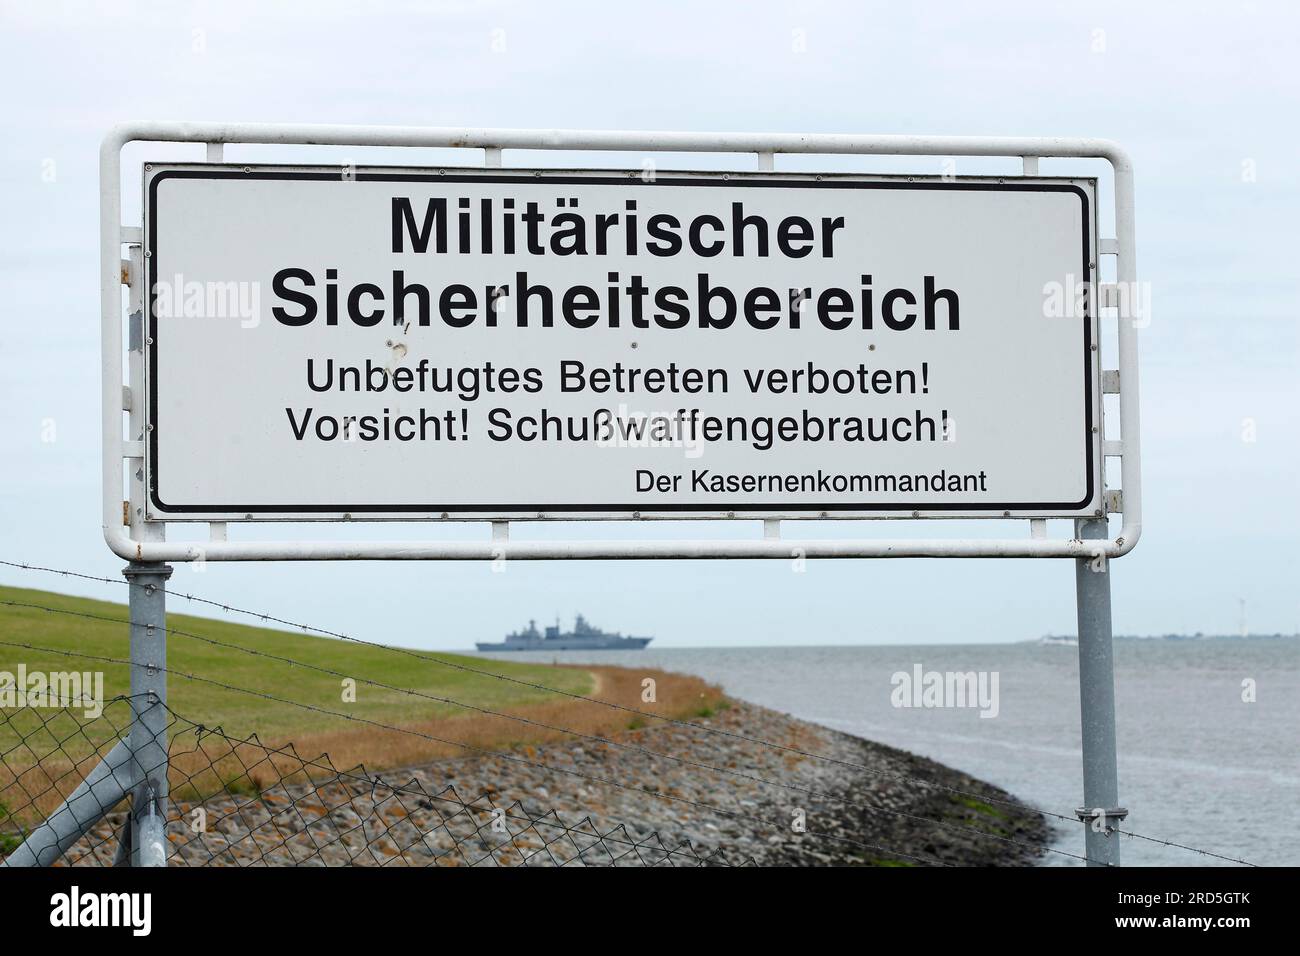 Warning sign with the inscription Militaerischer Sicherheitsbereich, unbefugtes Betreten verboten, vorsicht Schusswaffengebrauch, Wilhelmshaven Stock Photo